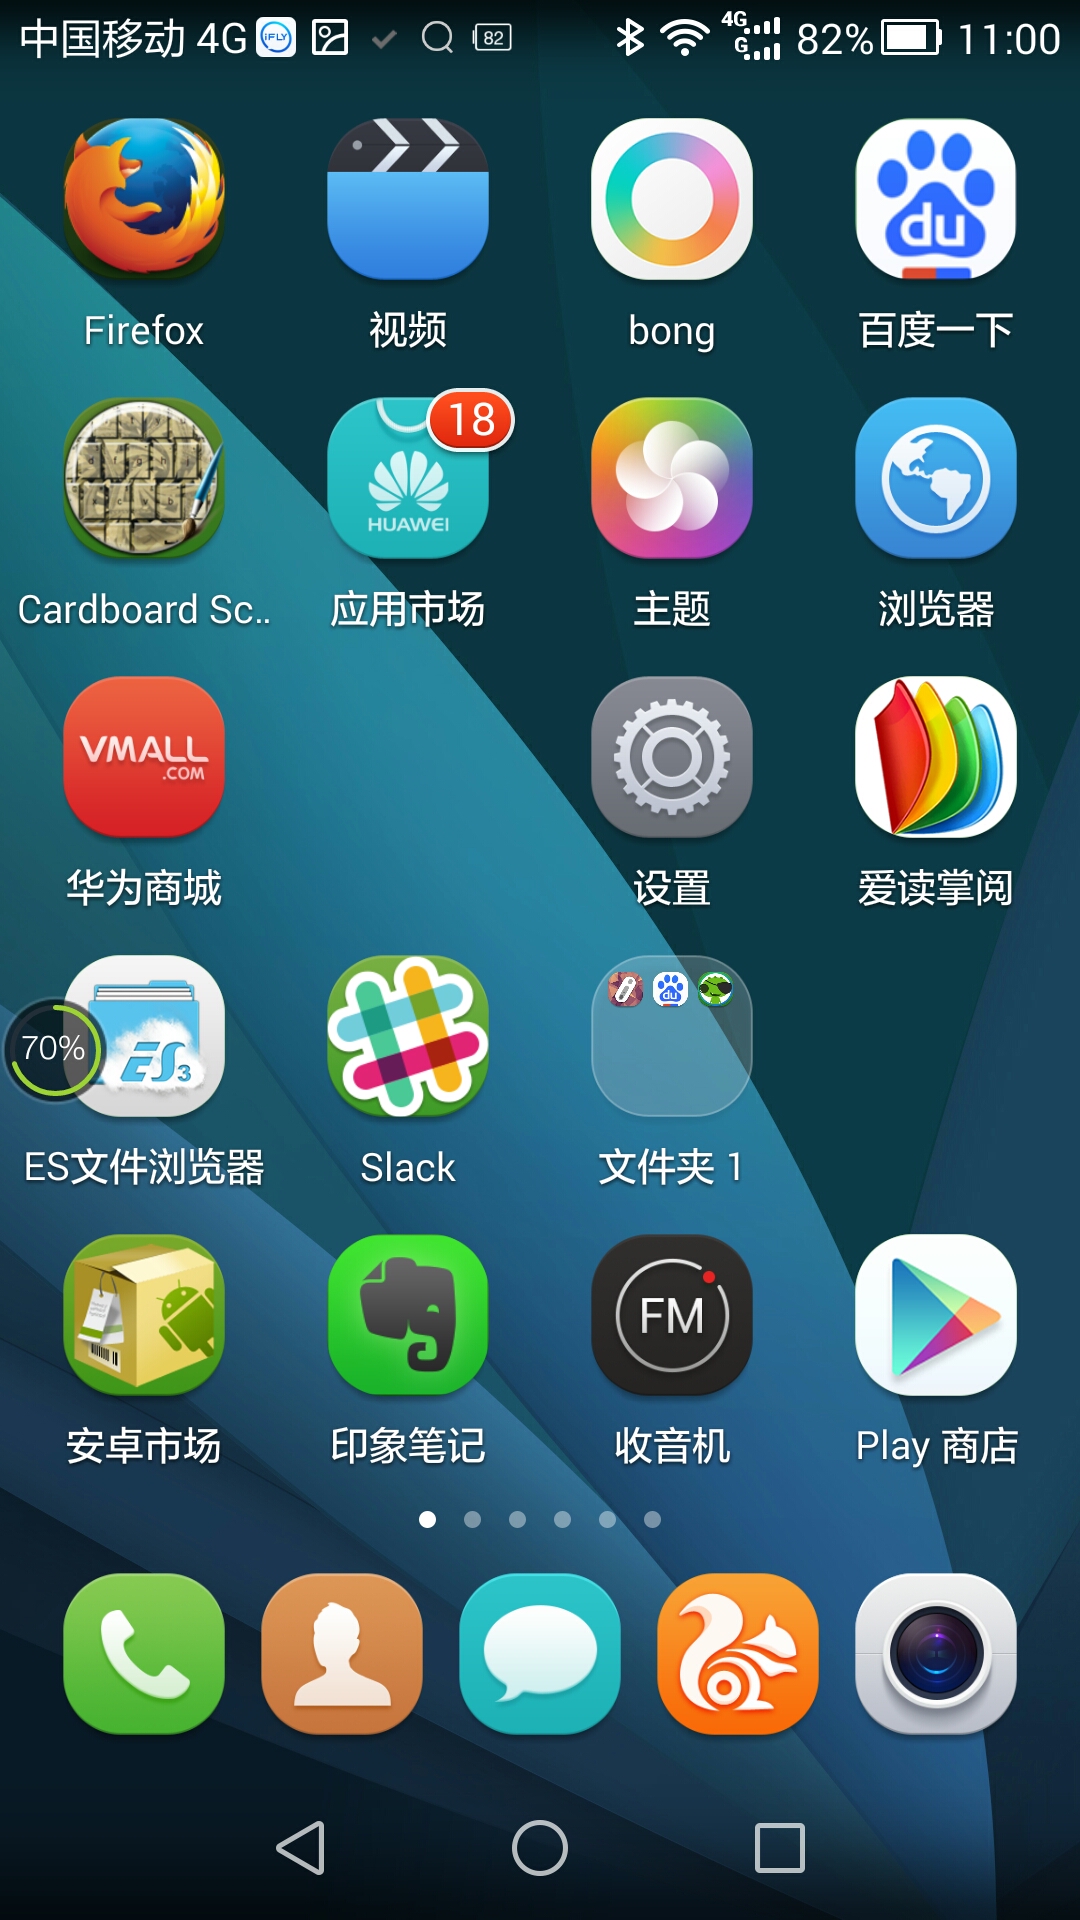 【已解决】华为荣耀6 EMUI 3.0 安卓手机 搜索